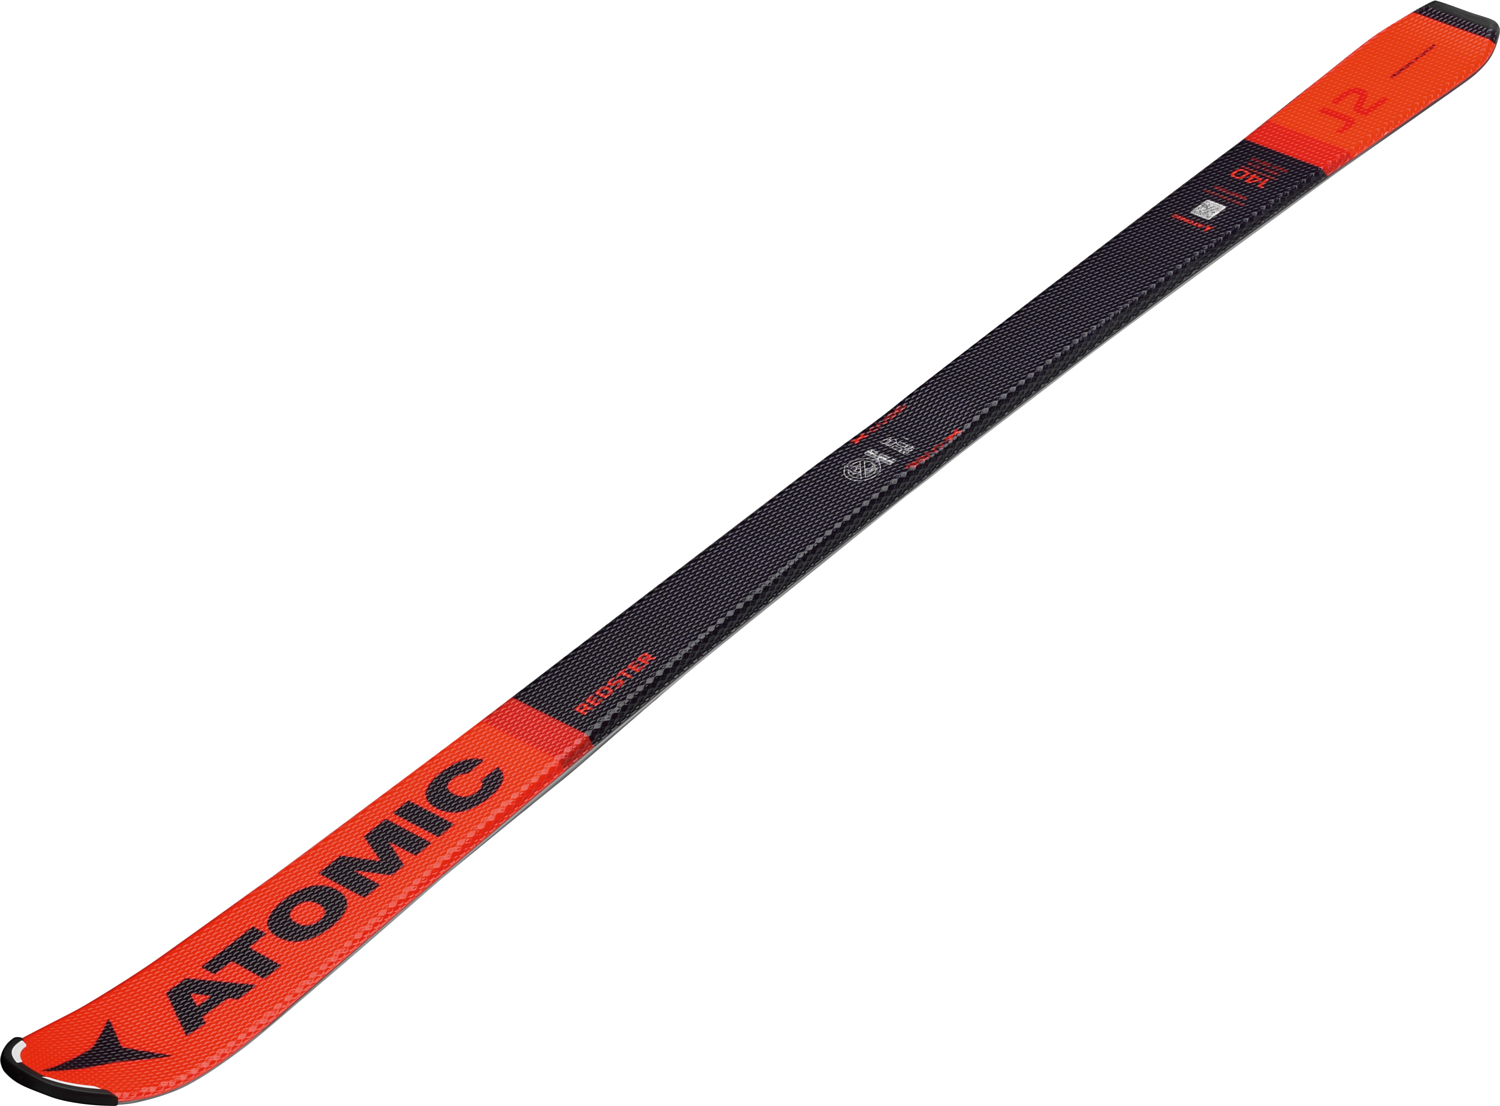 Горные лыжи с креплениями ATOMIC 2019-20 Redster J2 130-150 + C 5 Red/Black